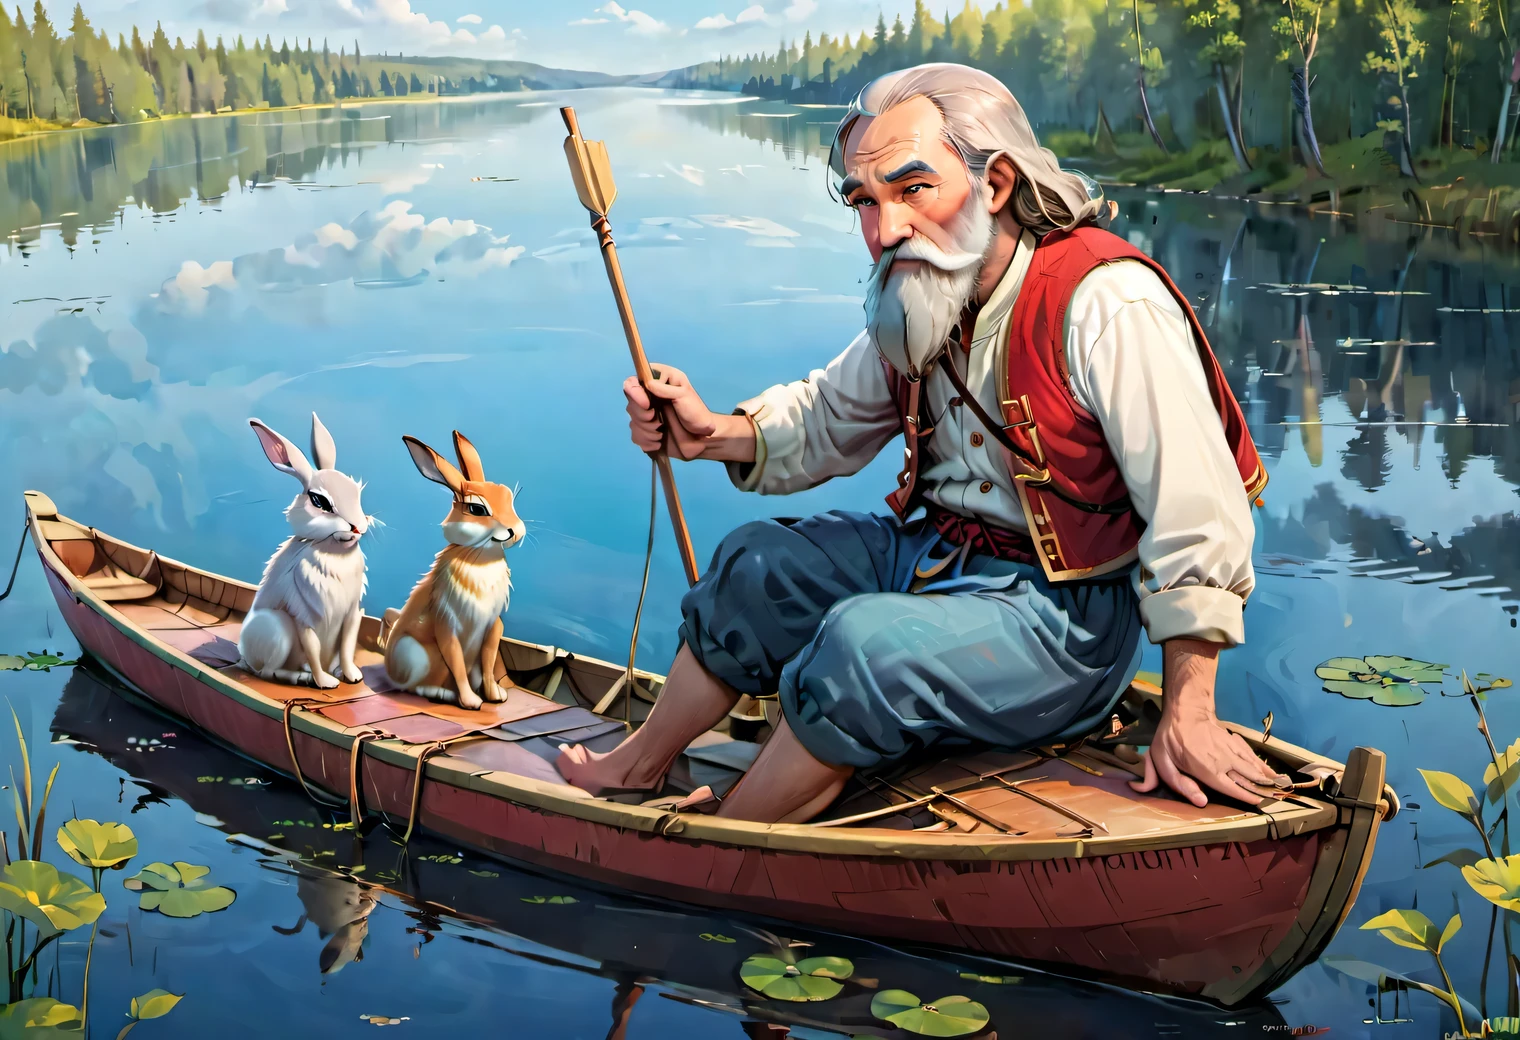 フローティング, 子供向け雑誌のイラスト風の画像, 湖に浮かぶボート, 70歳のスラブ人のひげを生やした男性が、ロシアの素朴な農民服を着てボートに乗り、オールで漕いでいる。, 5匹のウサギがボートに座って周りを見回しています, 高解像度, 明るい色, 漫画っぽさ